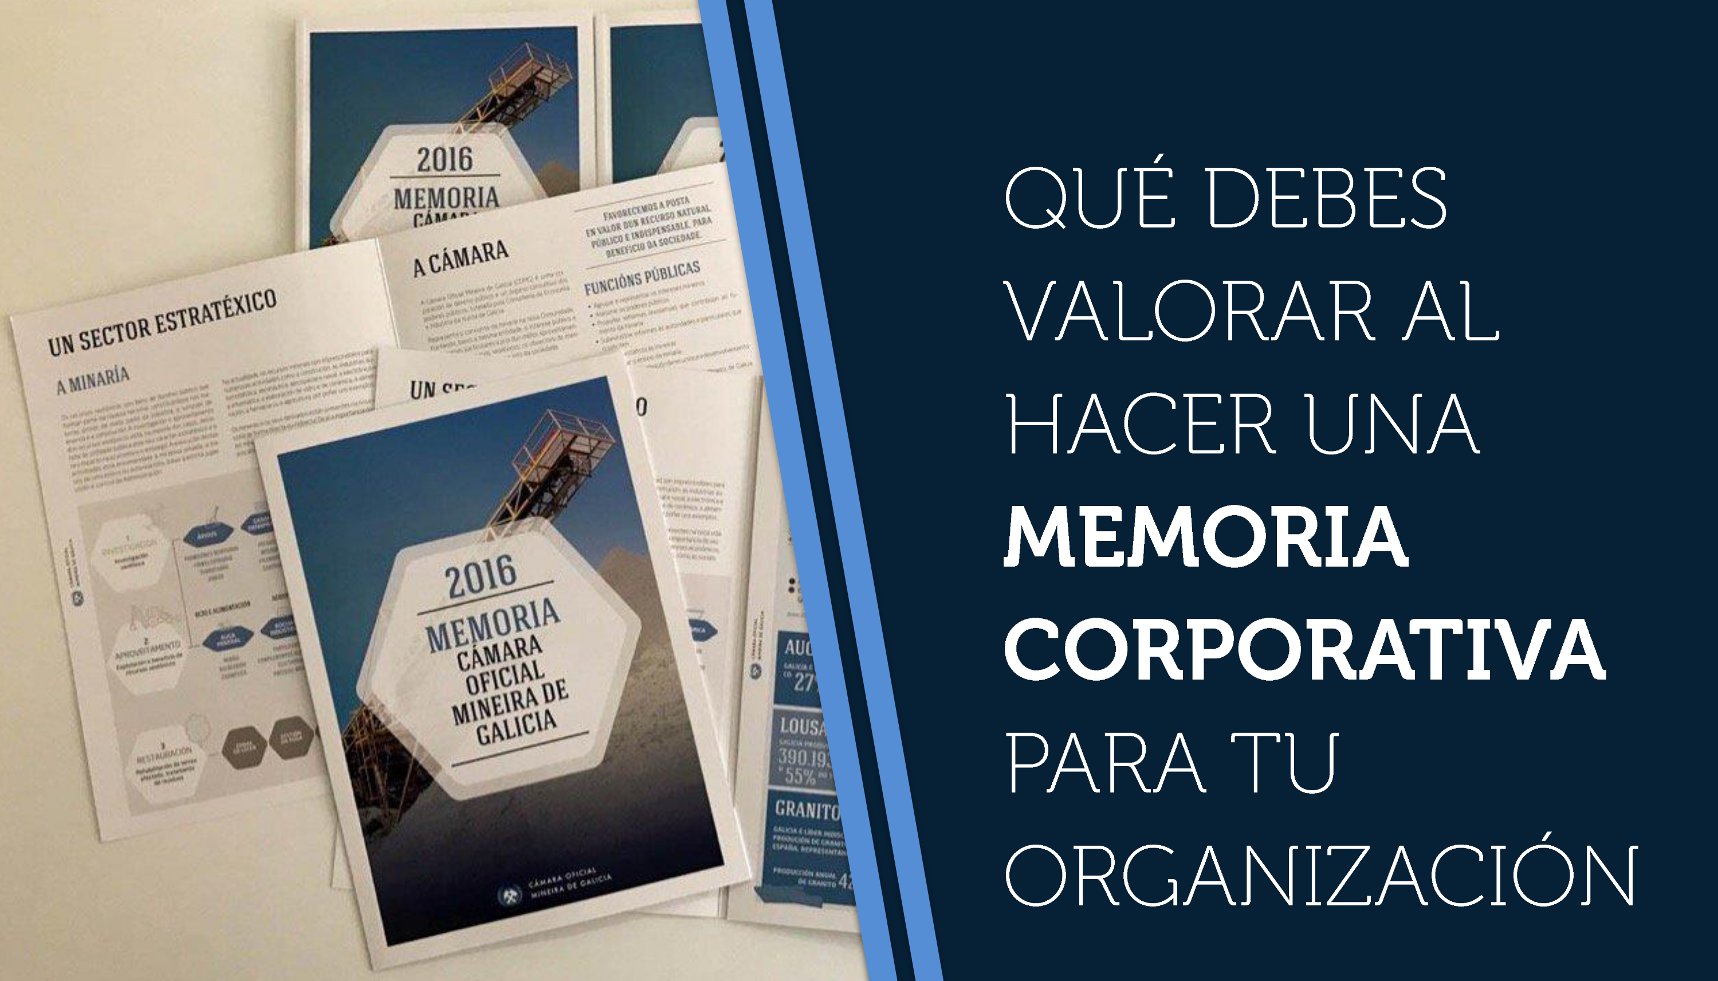 Qué debes valorar al hacer una memoria corporativa para tu organización